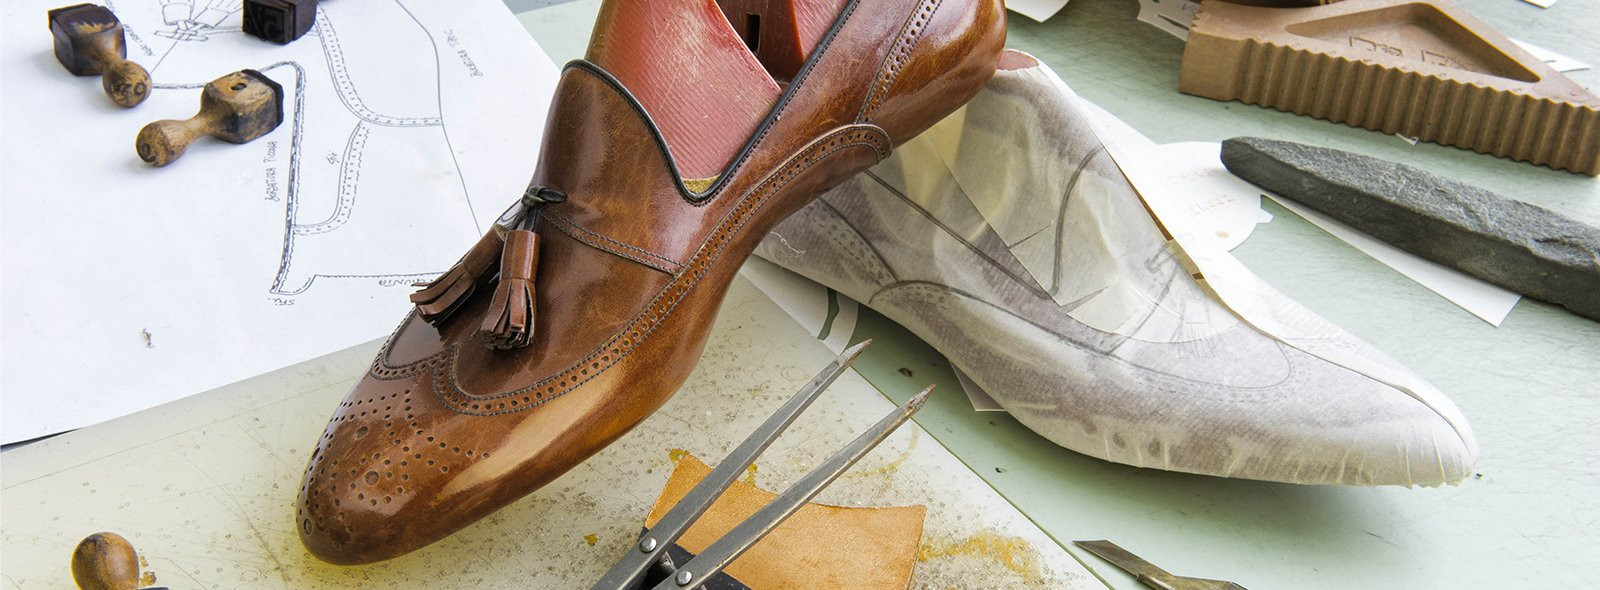 Nuovo contratto per il calzaturiero. Aumenti salariali minimi di 70 euro in tre anni